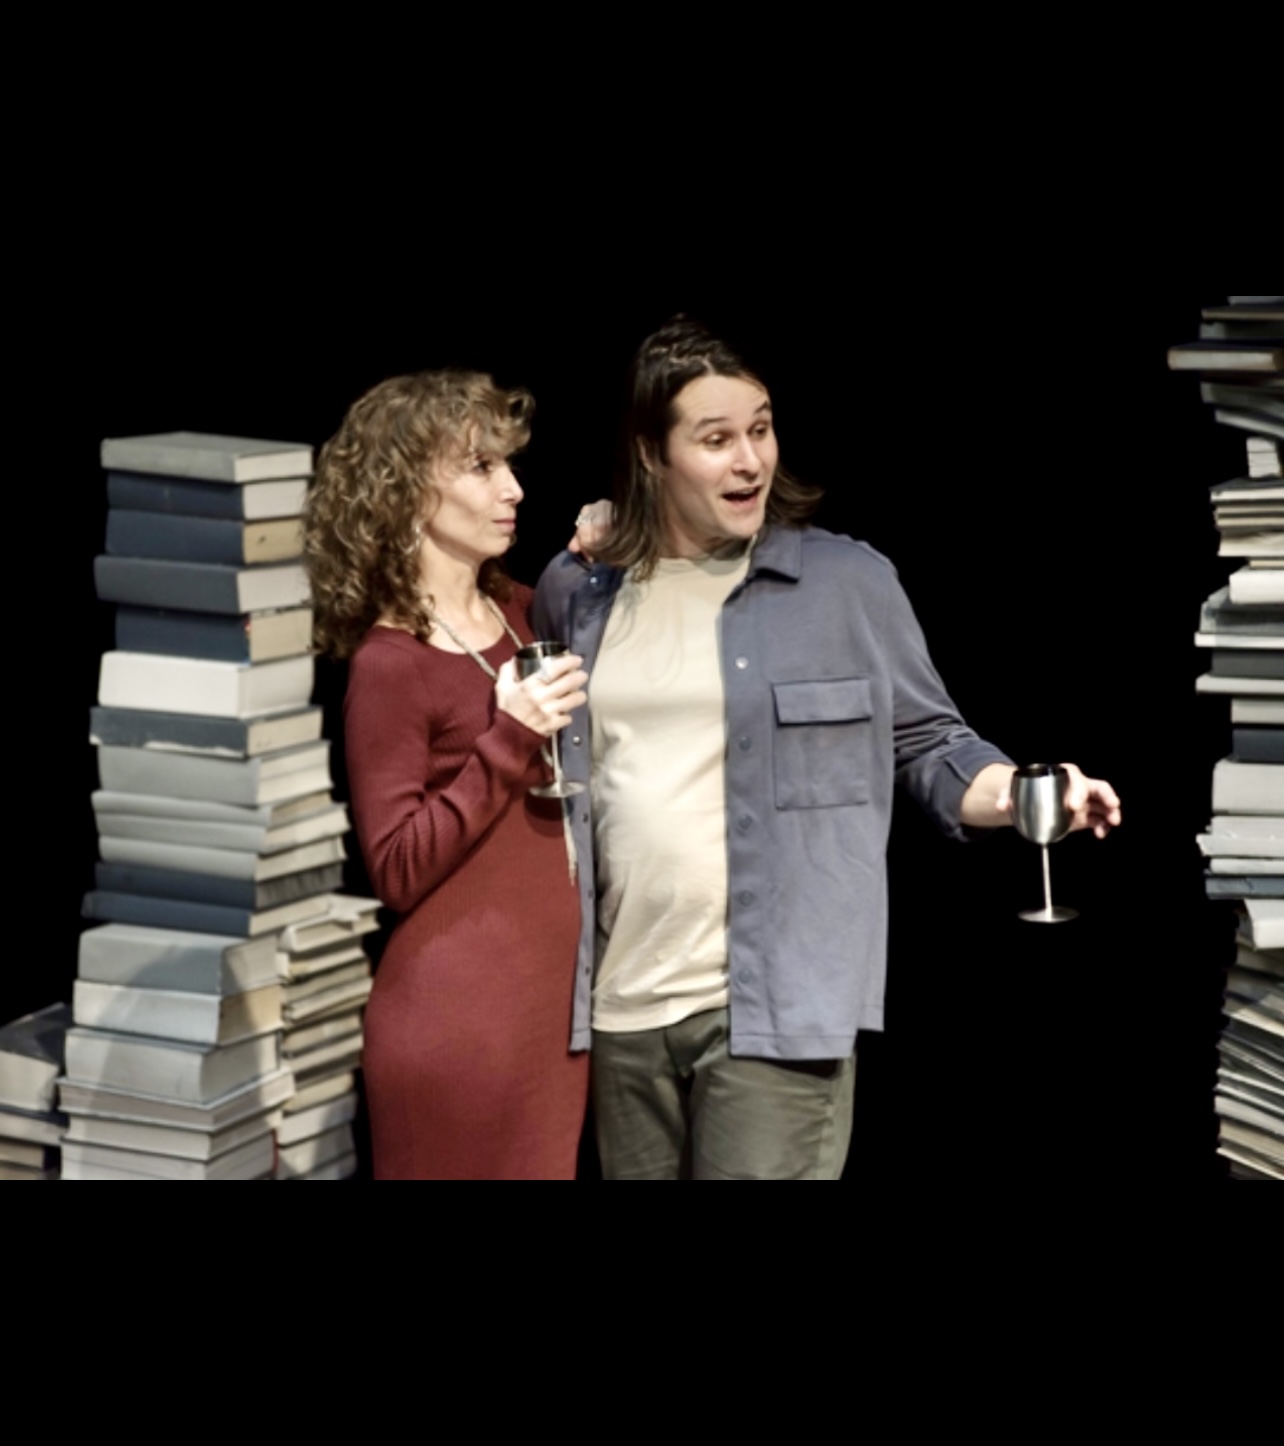 Un homme et une femme entourés de piles de livres alterNATIVES au Centaure.